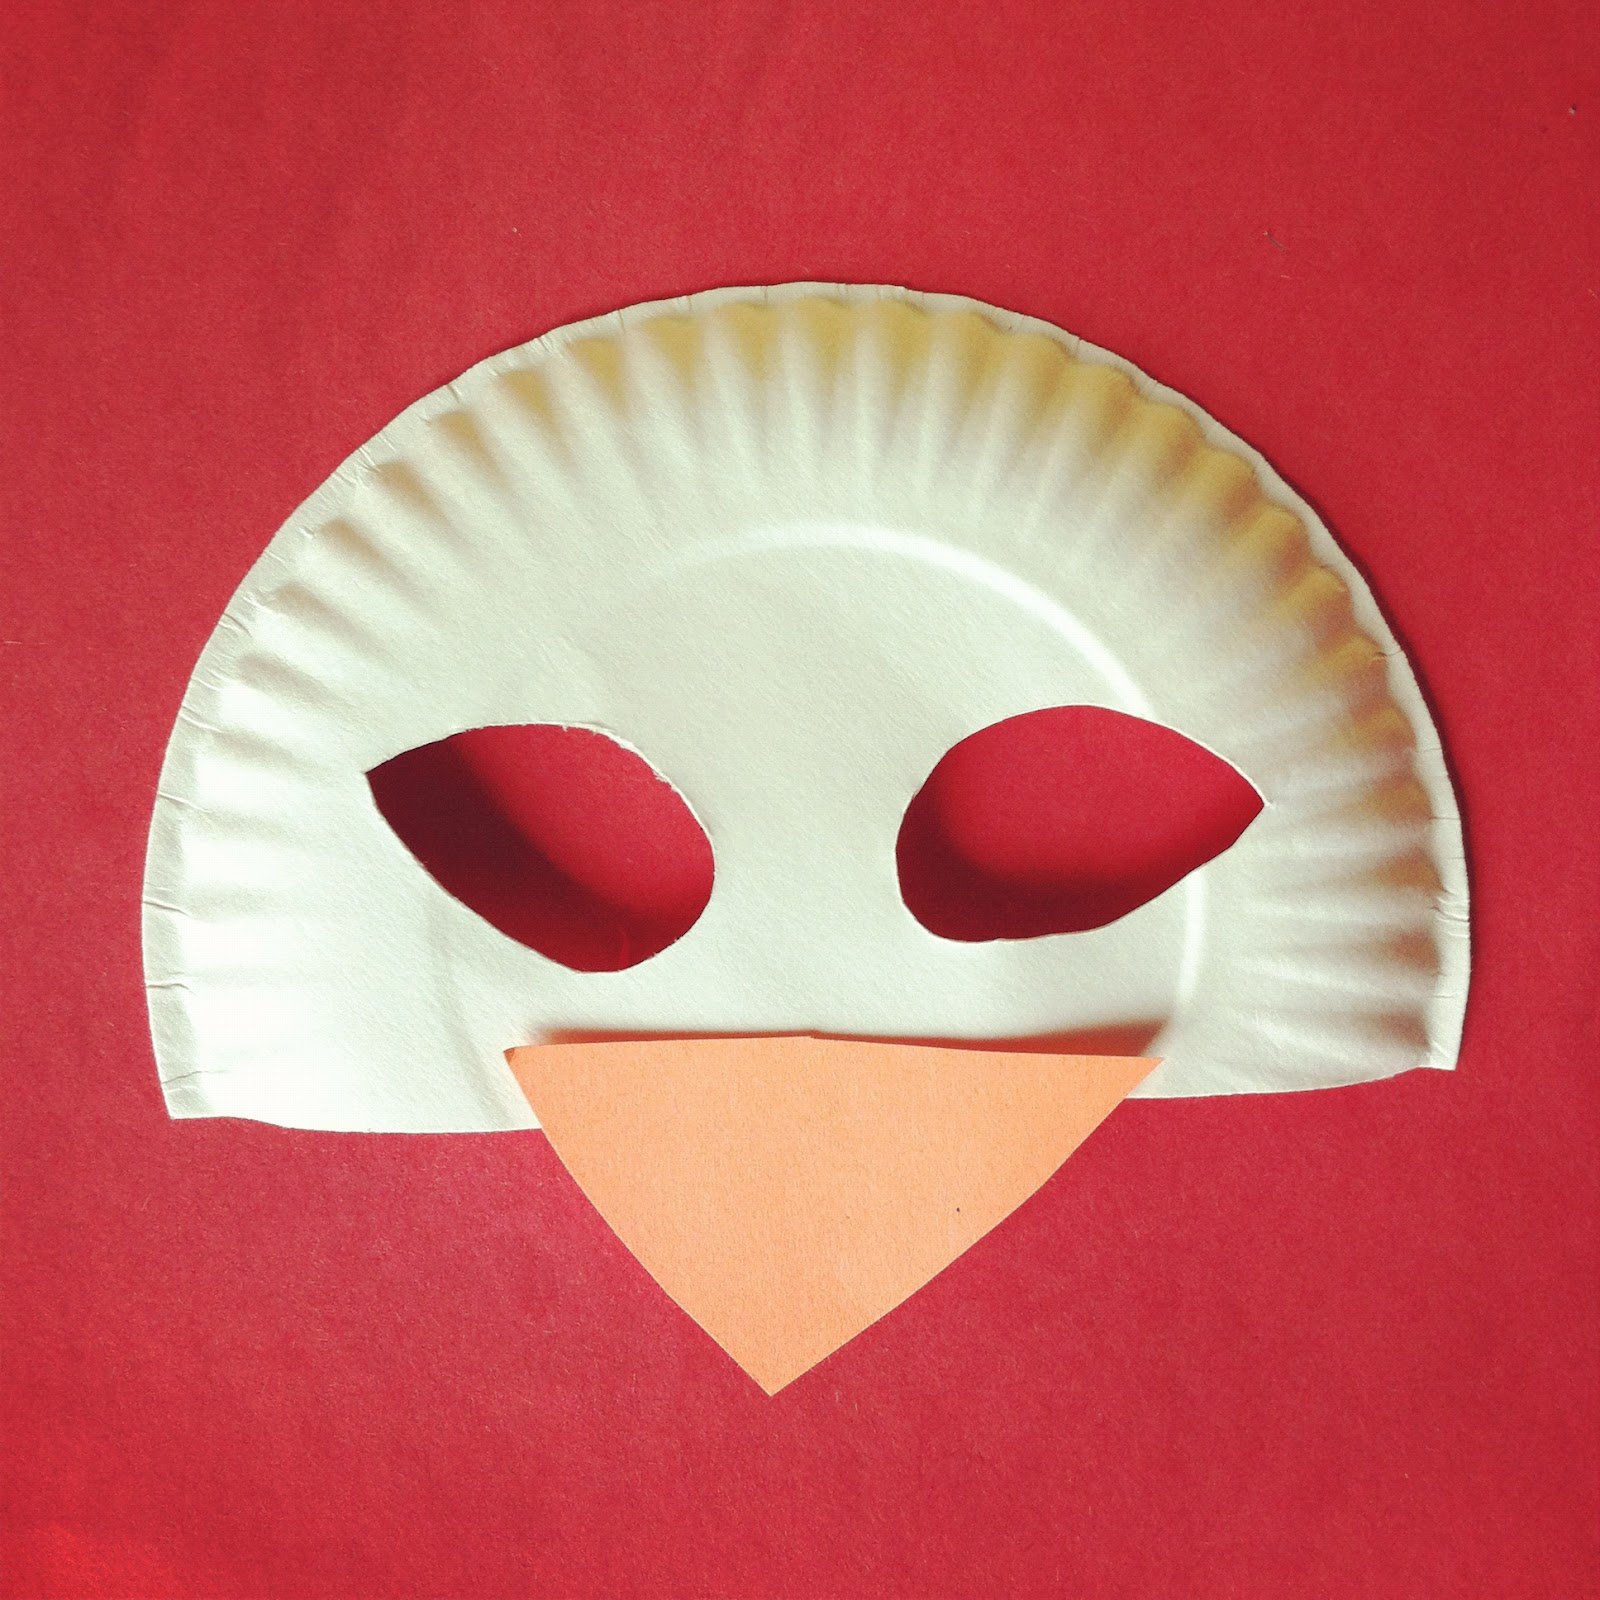 Маска bird. Маска птички. Маска птицы для детей. Картонные маски птиц. Бумажные маски.